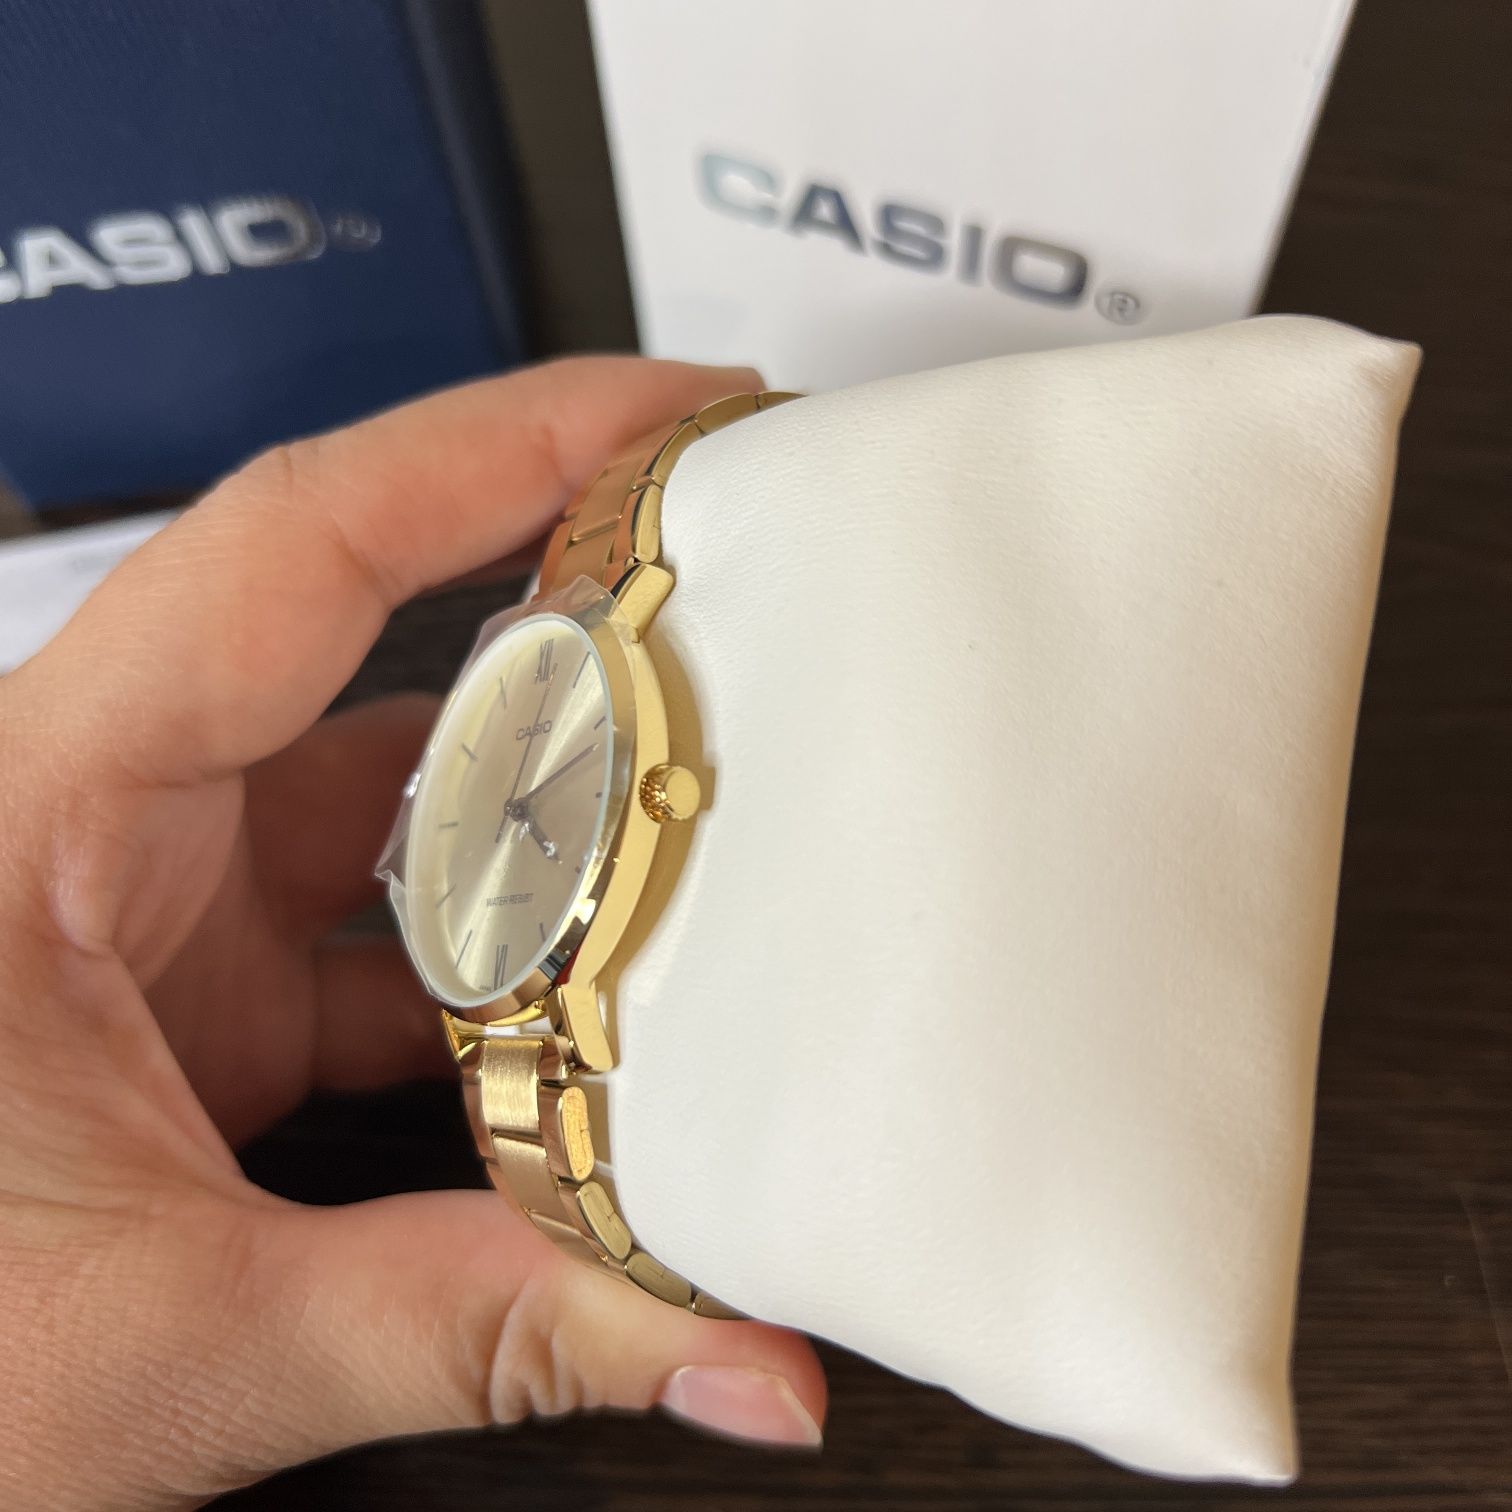 Оригинал новый в упаковке. Женская наручные часы Касио